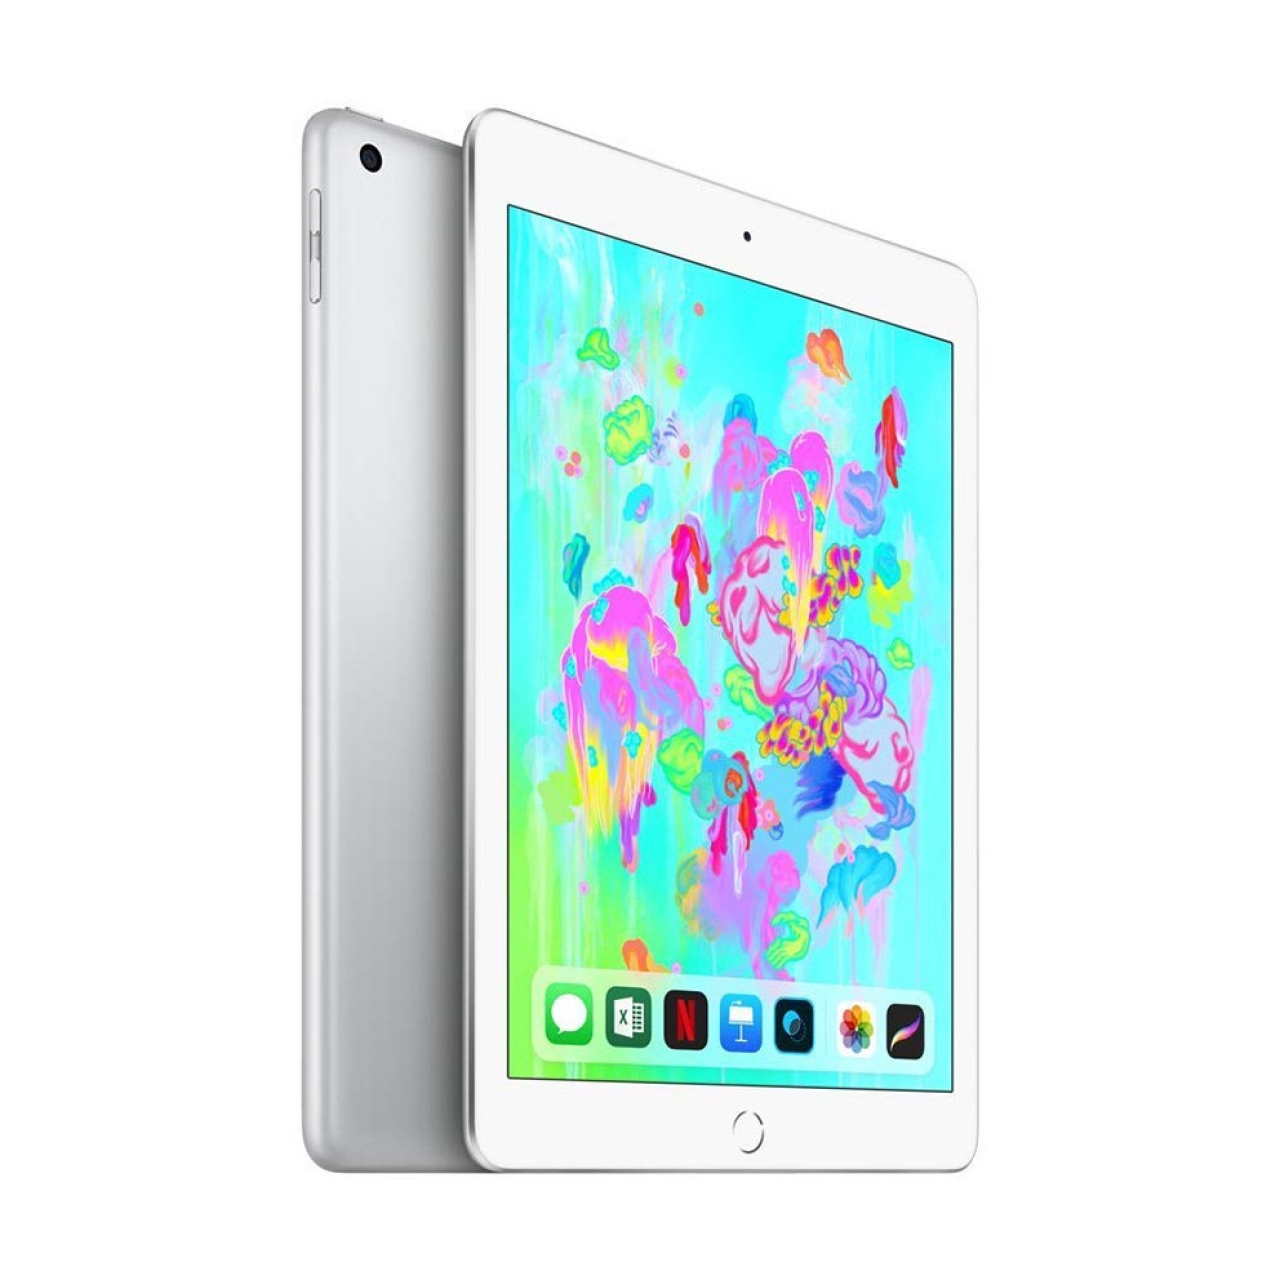 تبلت اپل مدل iPad 2018 (6th Generation) 9.7 inch WiFi ظرفیت 128 گیگابایت نقره ای